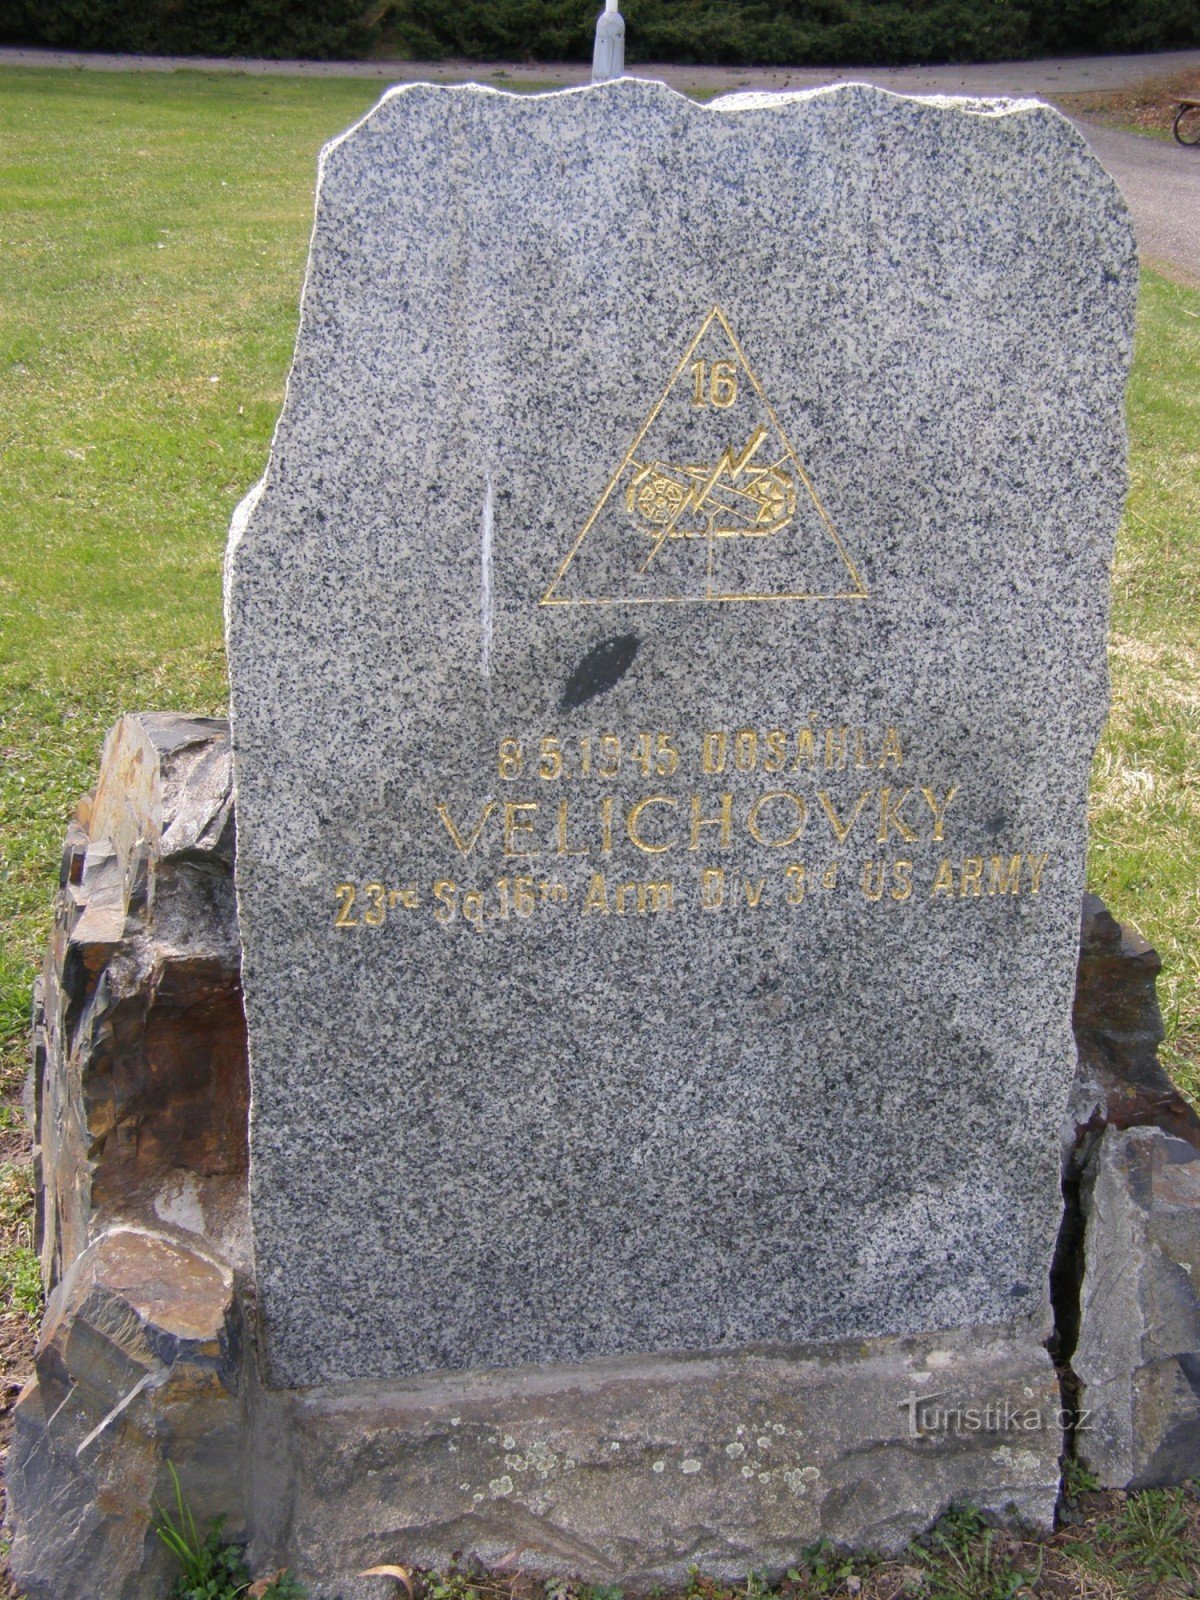 Velichovky - tượng đài của quân đội Mỹ